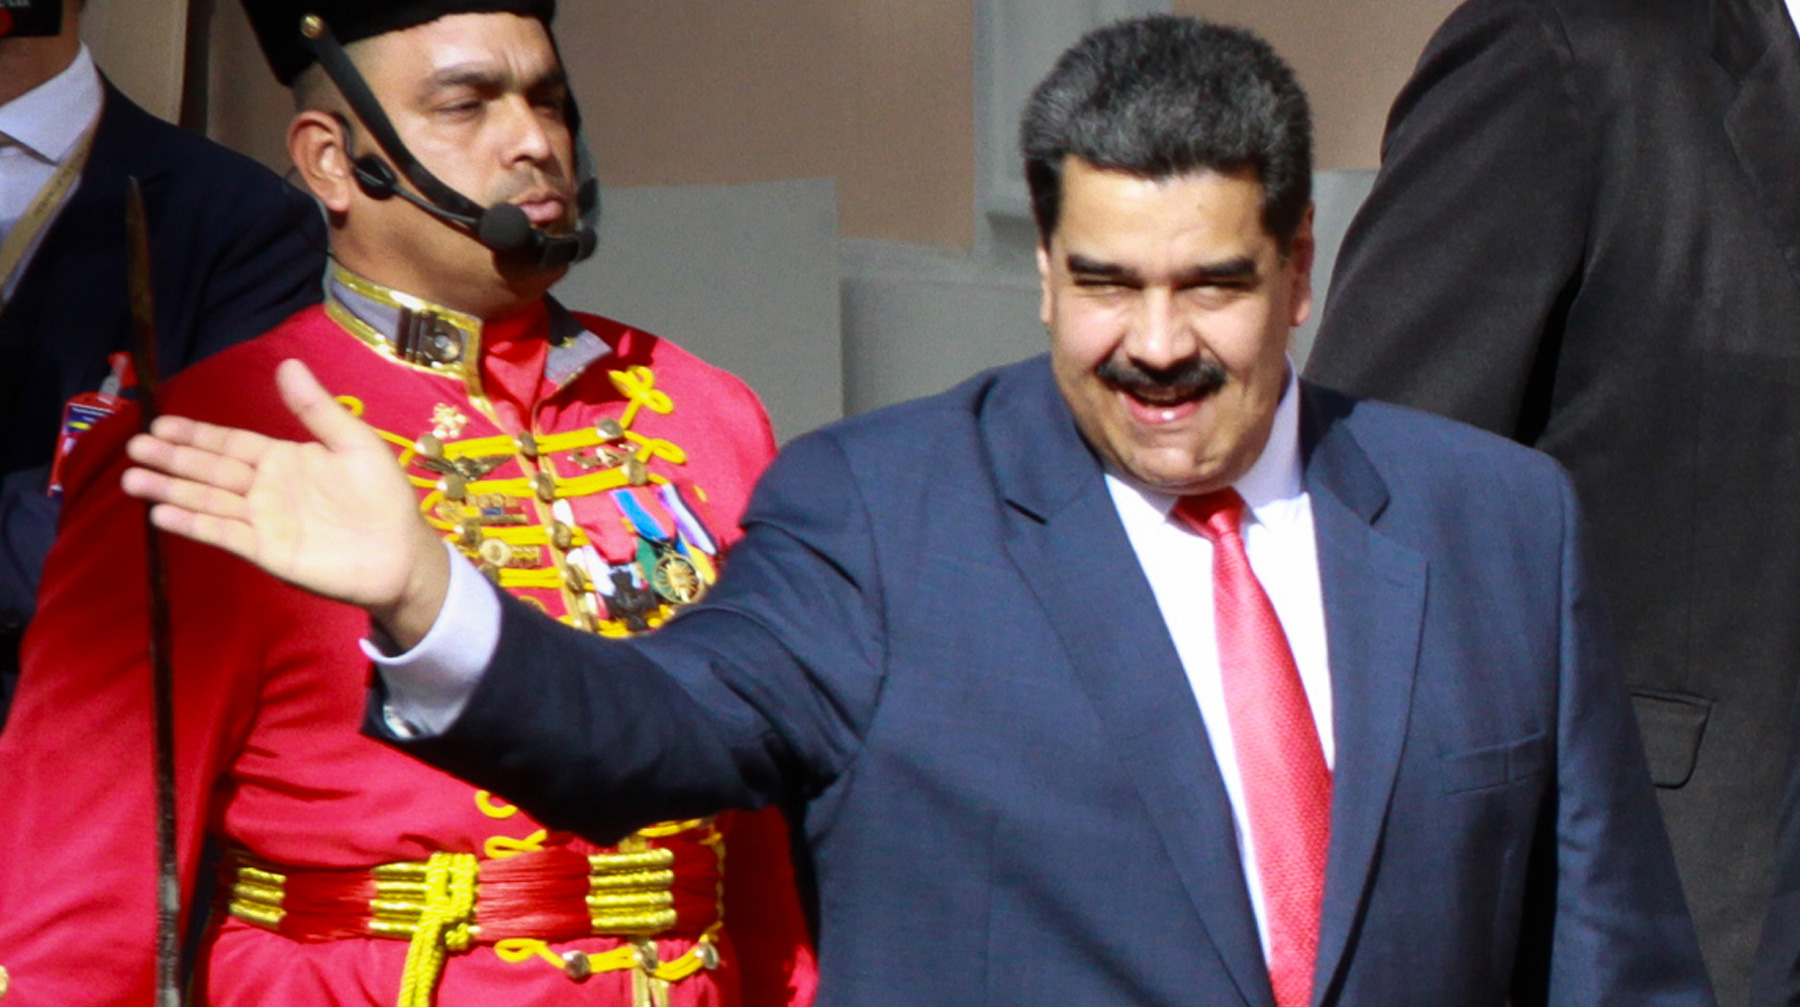 Рабочая встреча между президентами РФ и Венесуэлы послужит укреплению уз дружбы между братскими странами, заявил Мадуро Фото: © GLOBAL LOOK Press / Boris Vergara / dpa